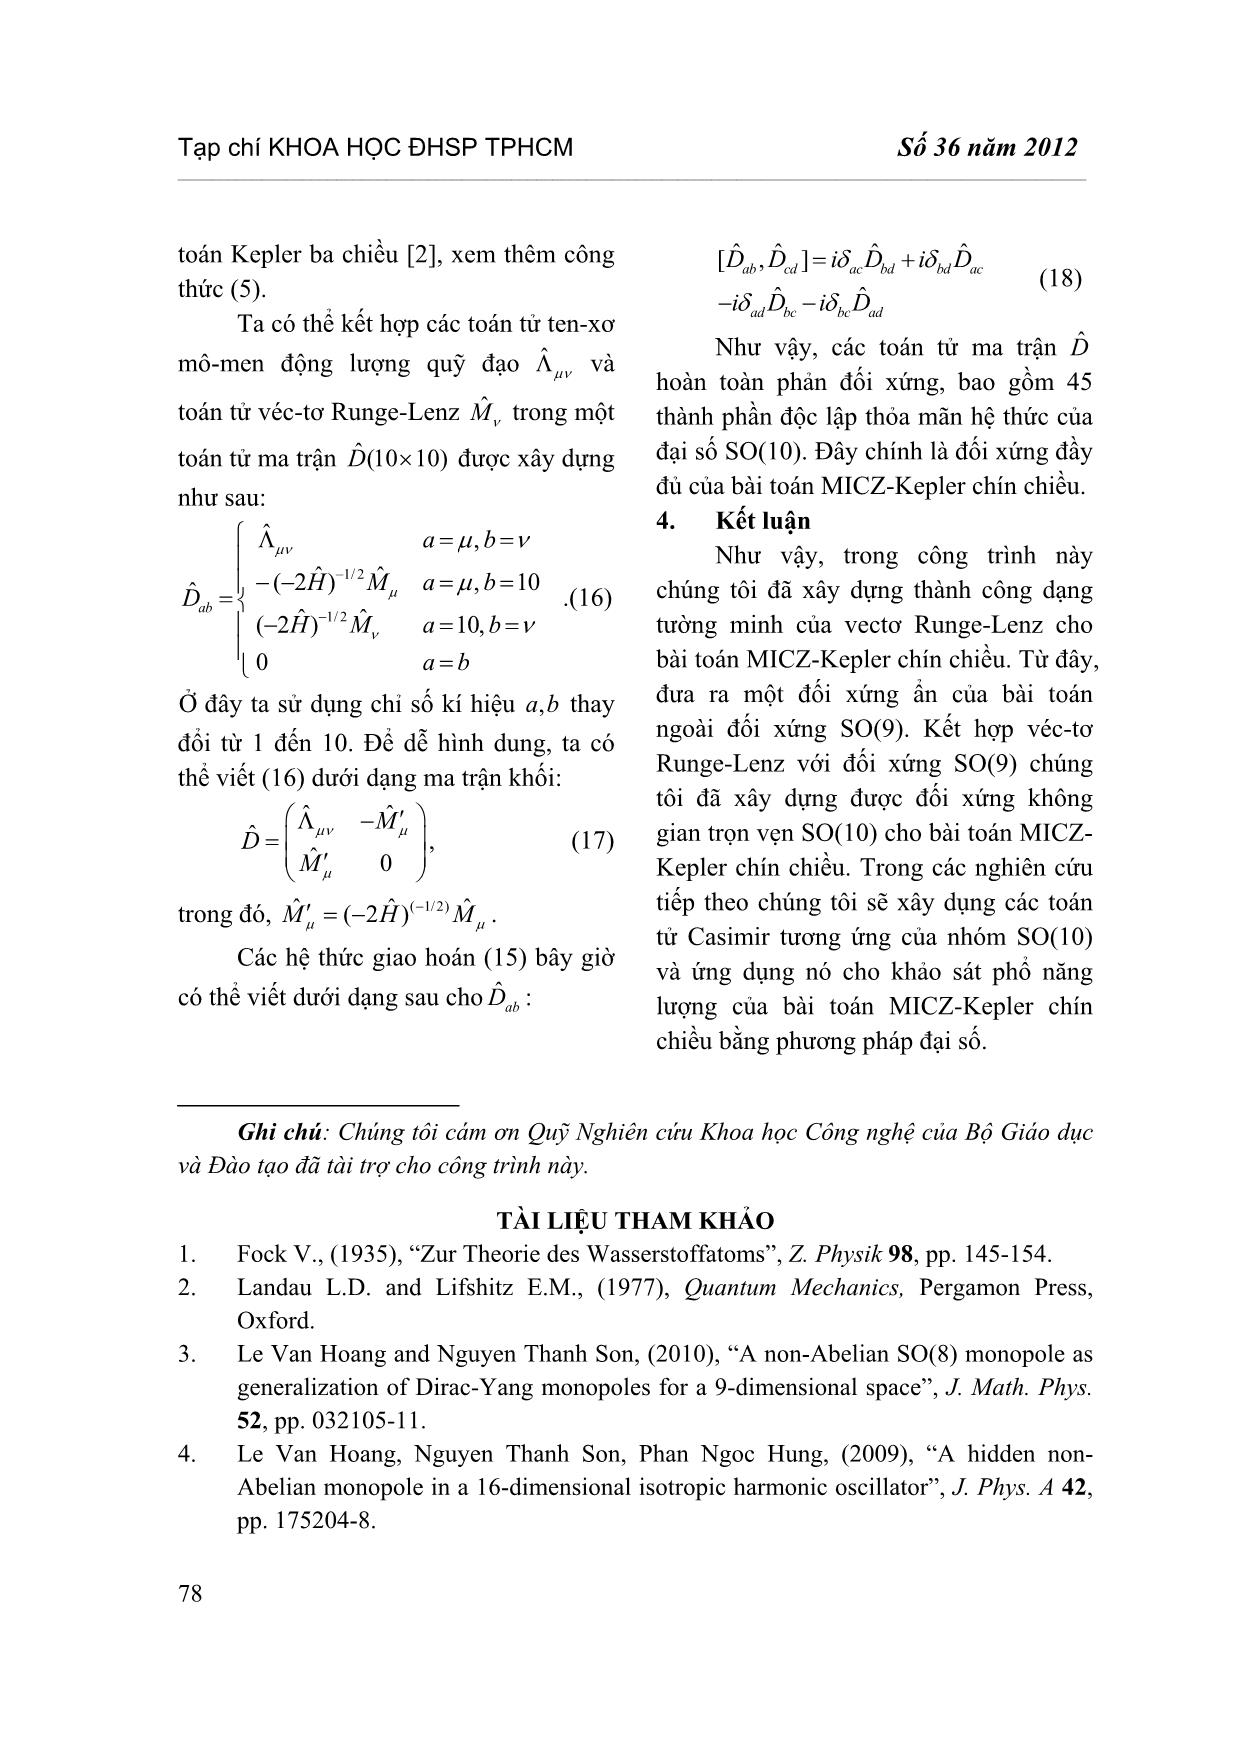 Đối xứng ẩn của bài toán Micz-Kepler chín chiều trang 5